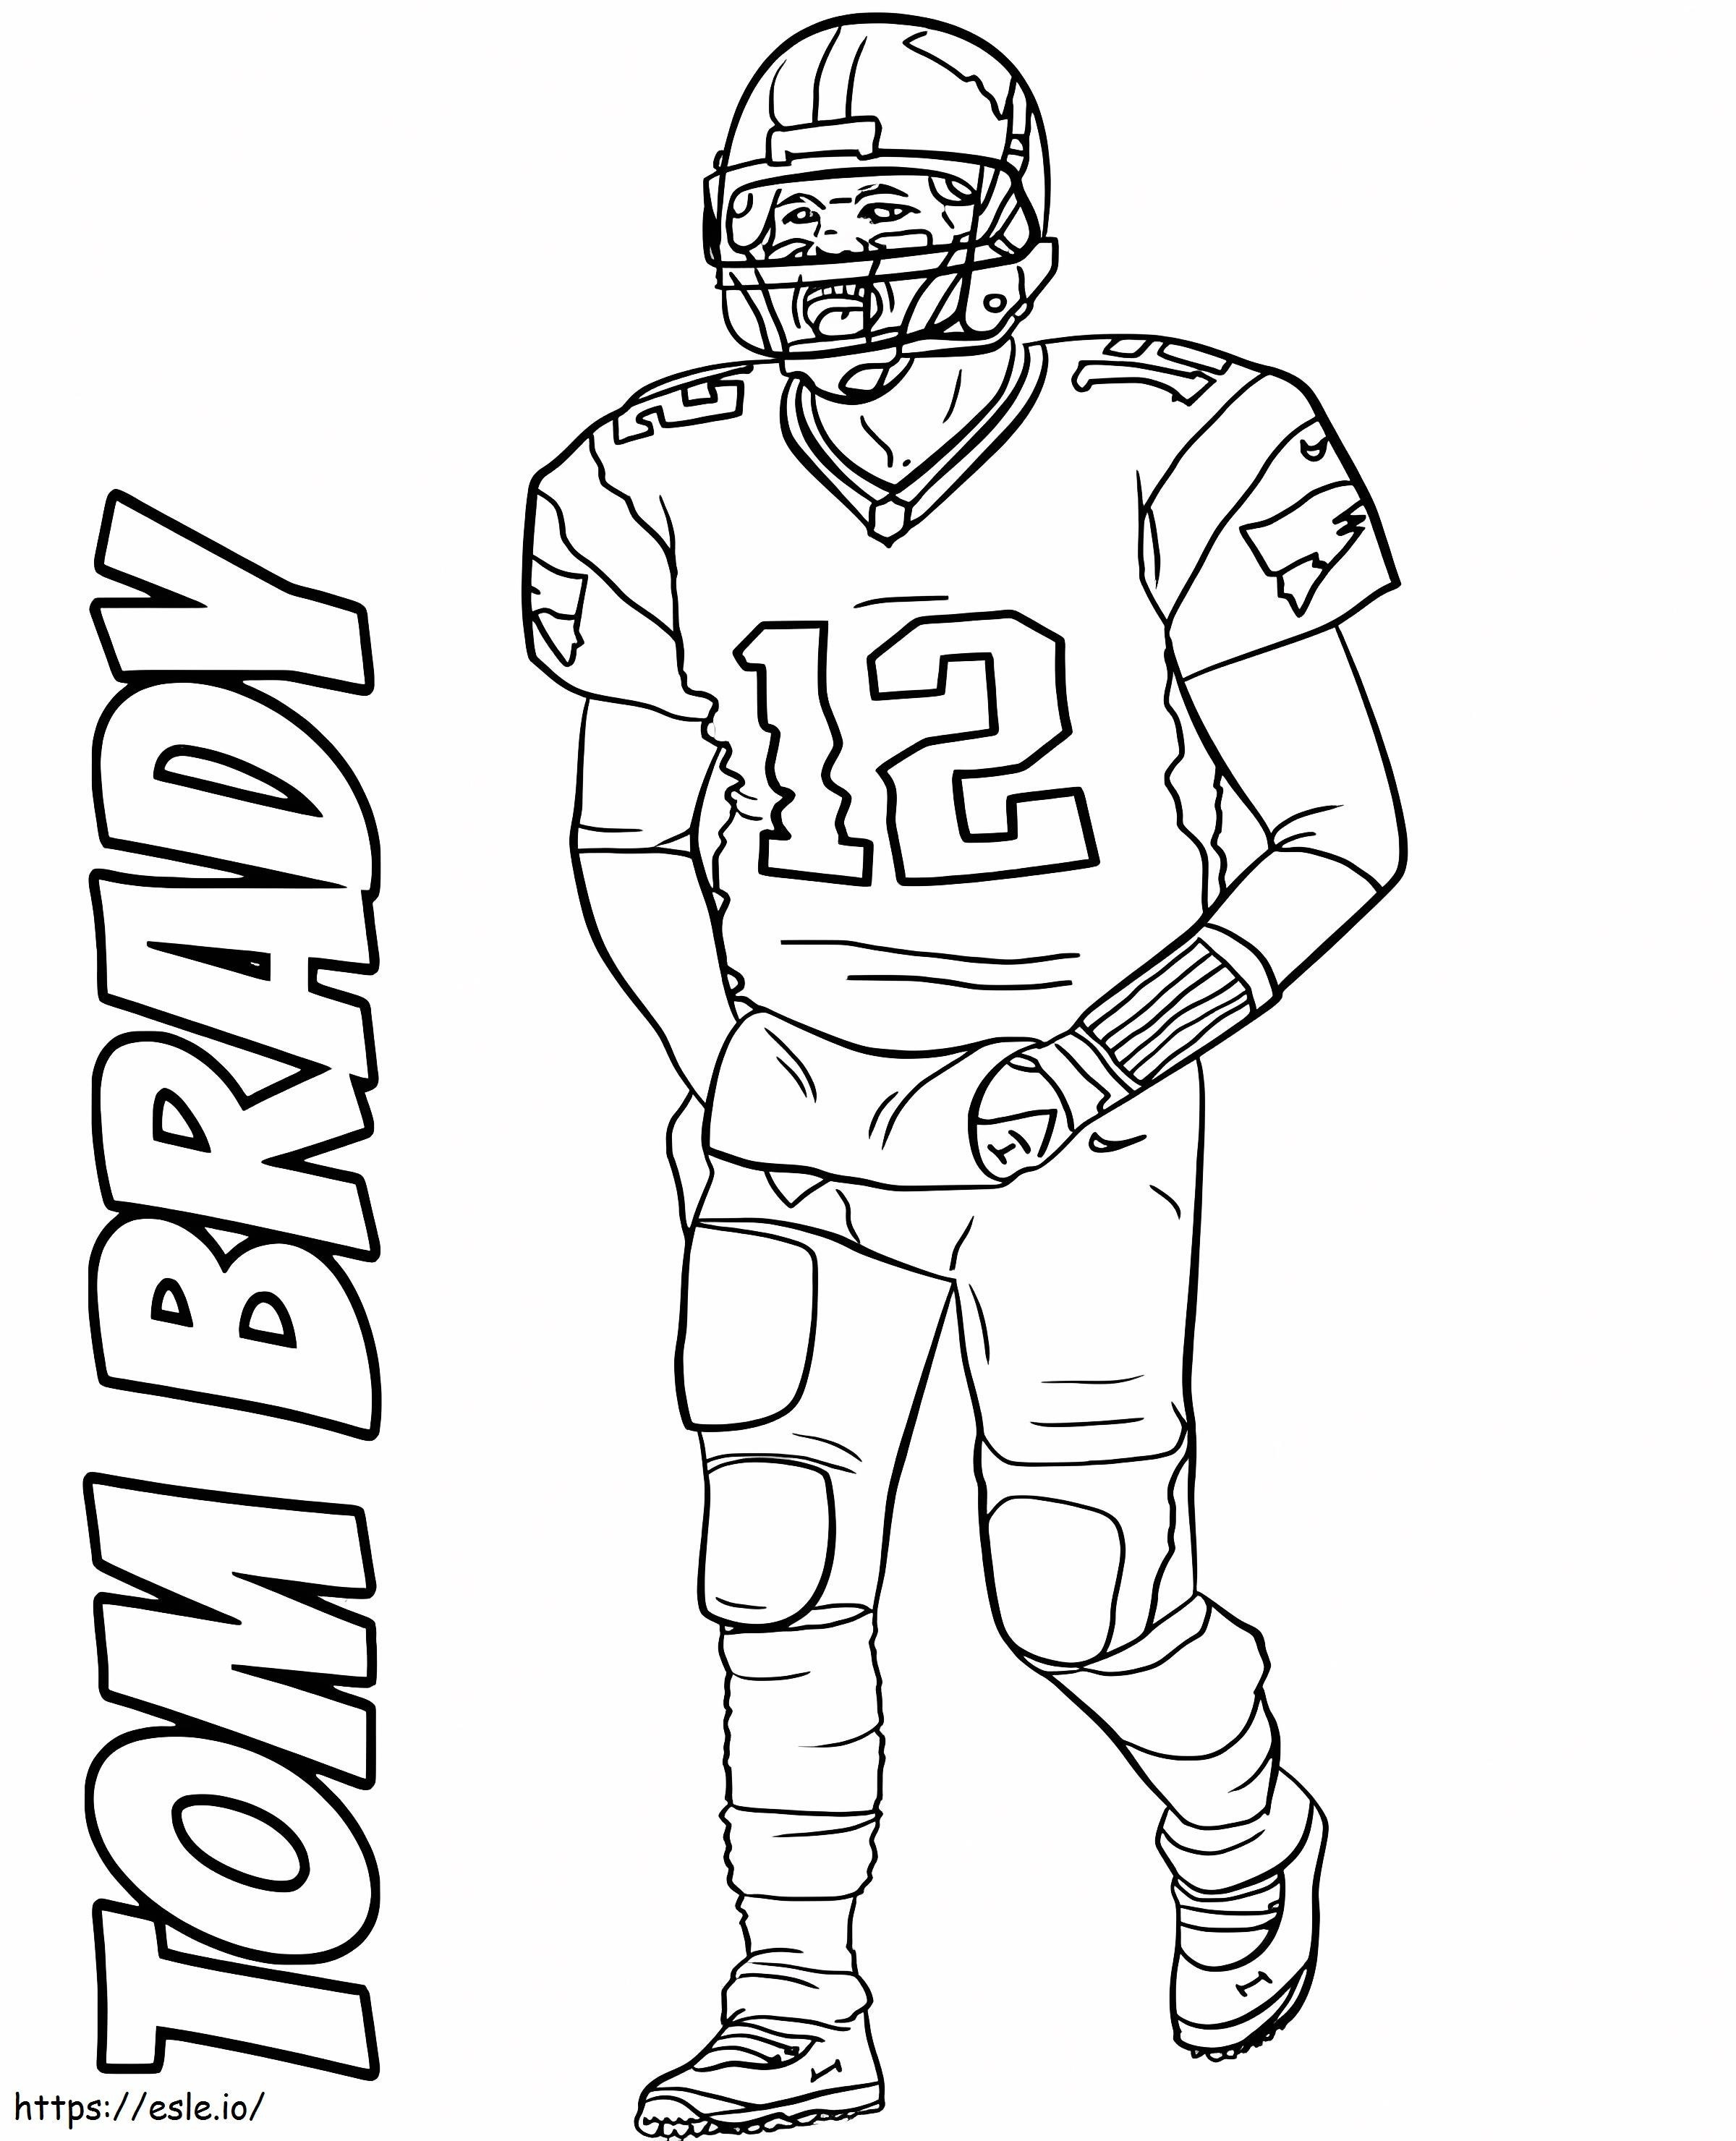 Ücretsiz Yazdırılabilir Tom Brady boyama